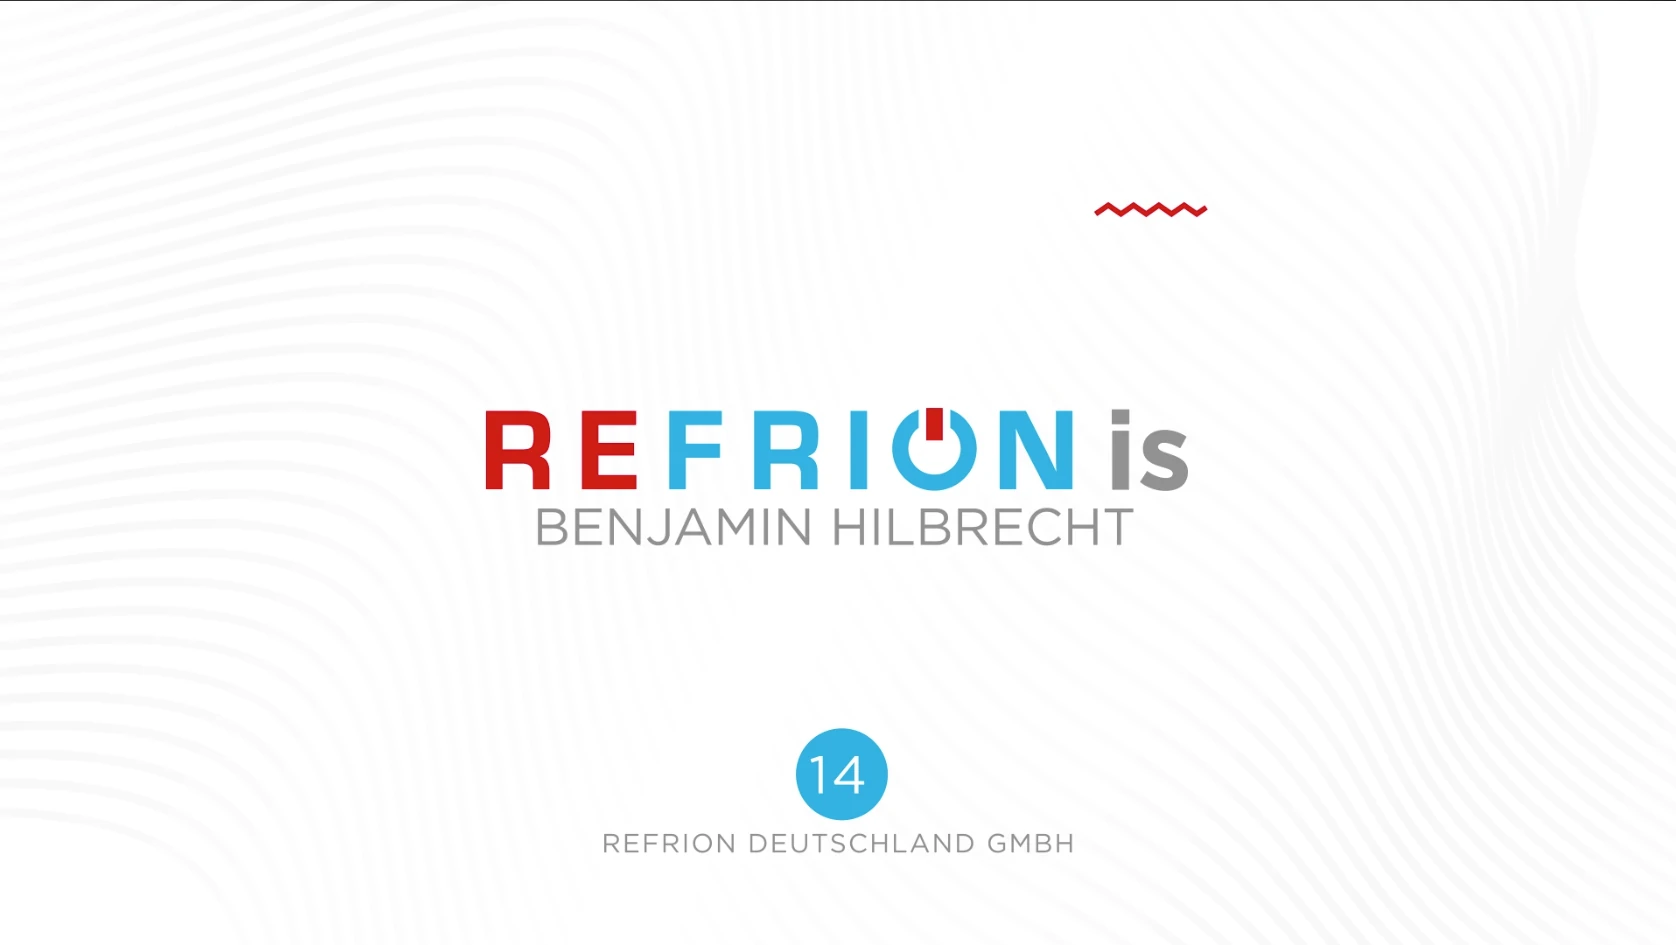 refrion_news_refrion_is_benjamin_hilbrecht